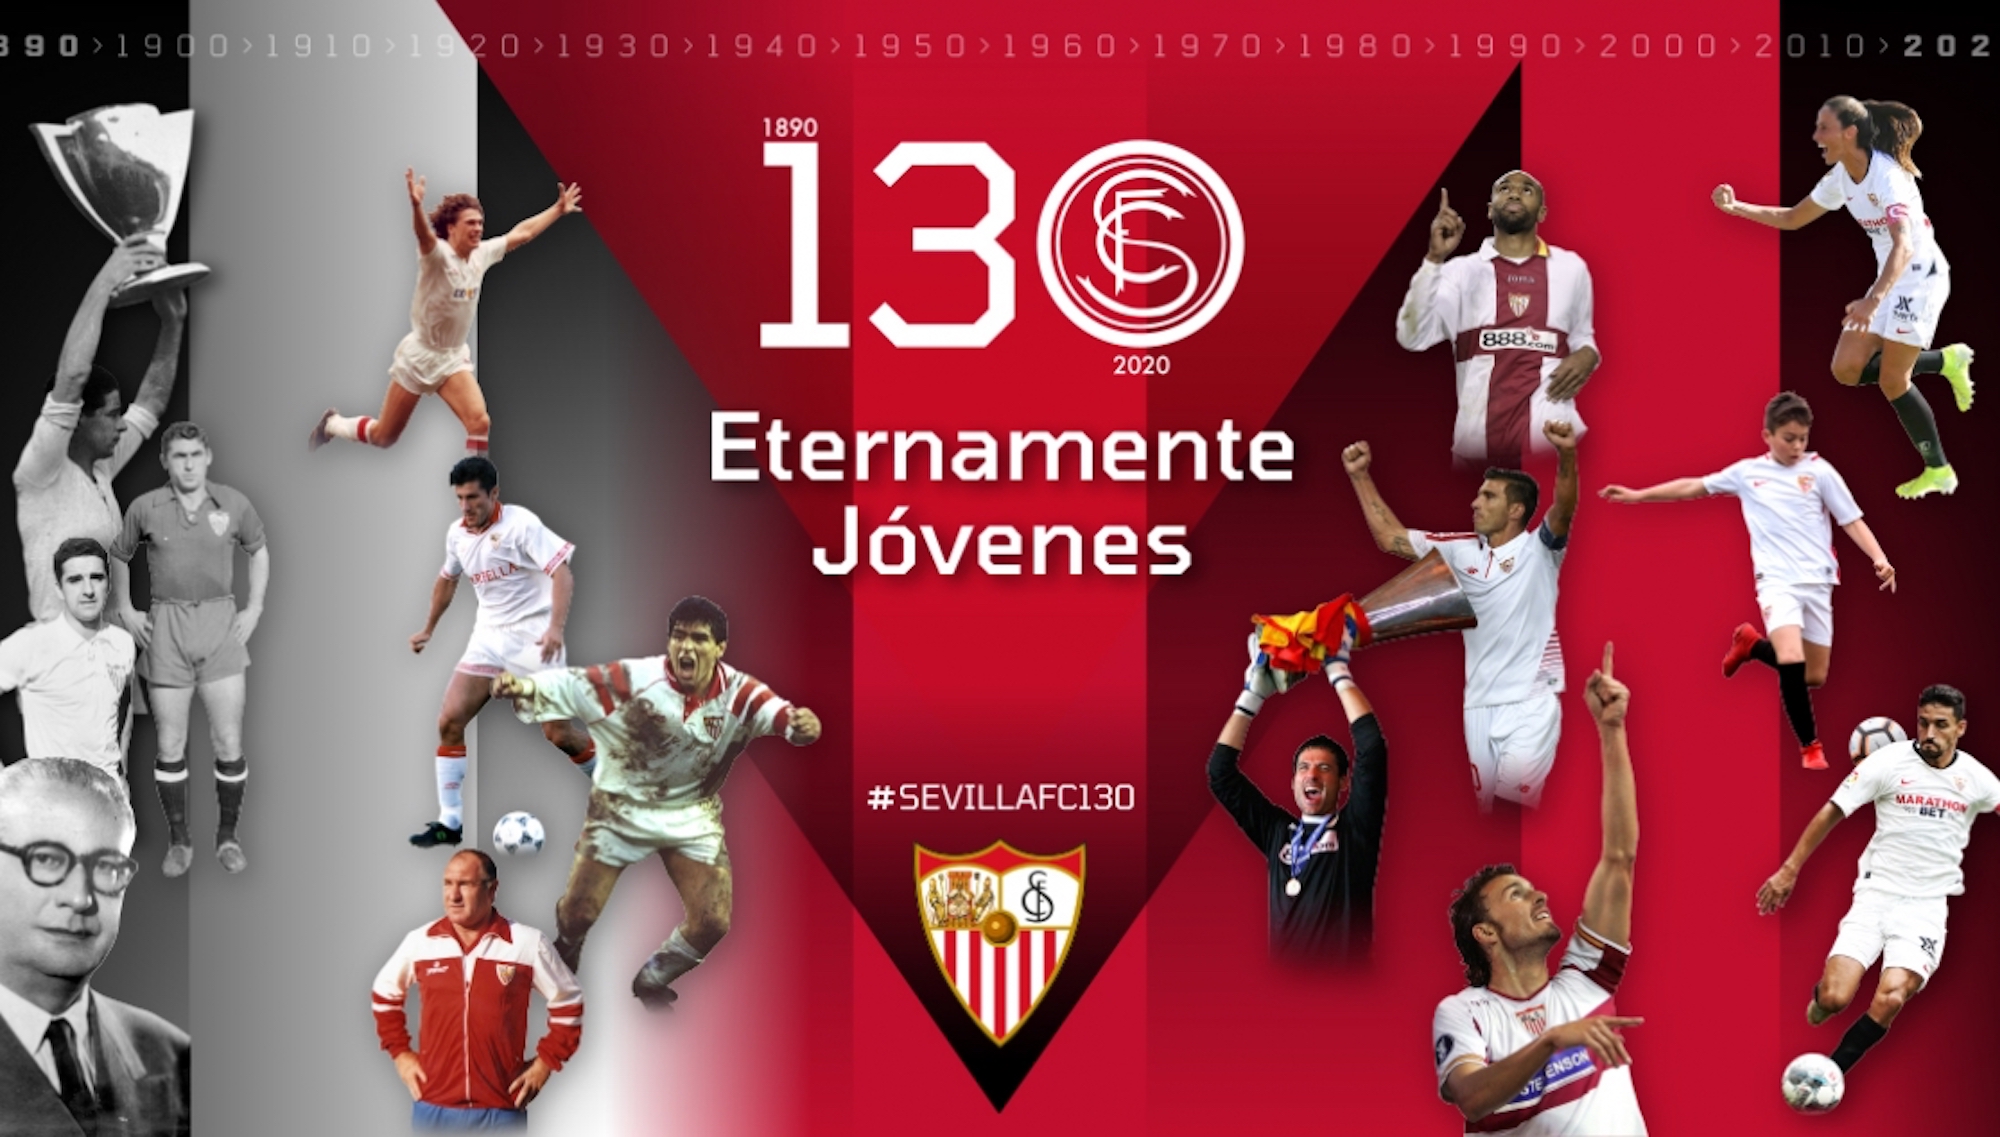 Eternamente jóvenes, el mensaje del Sevilla FC para celebrar su 130 aniversario